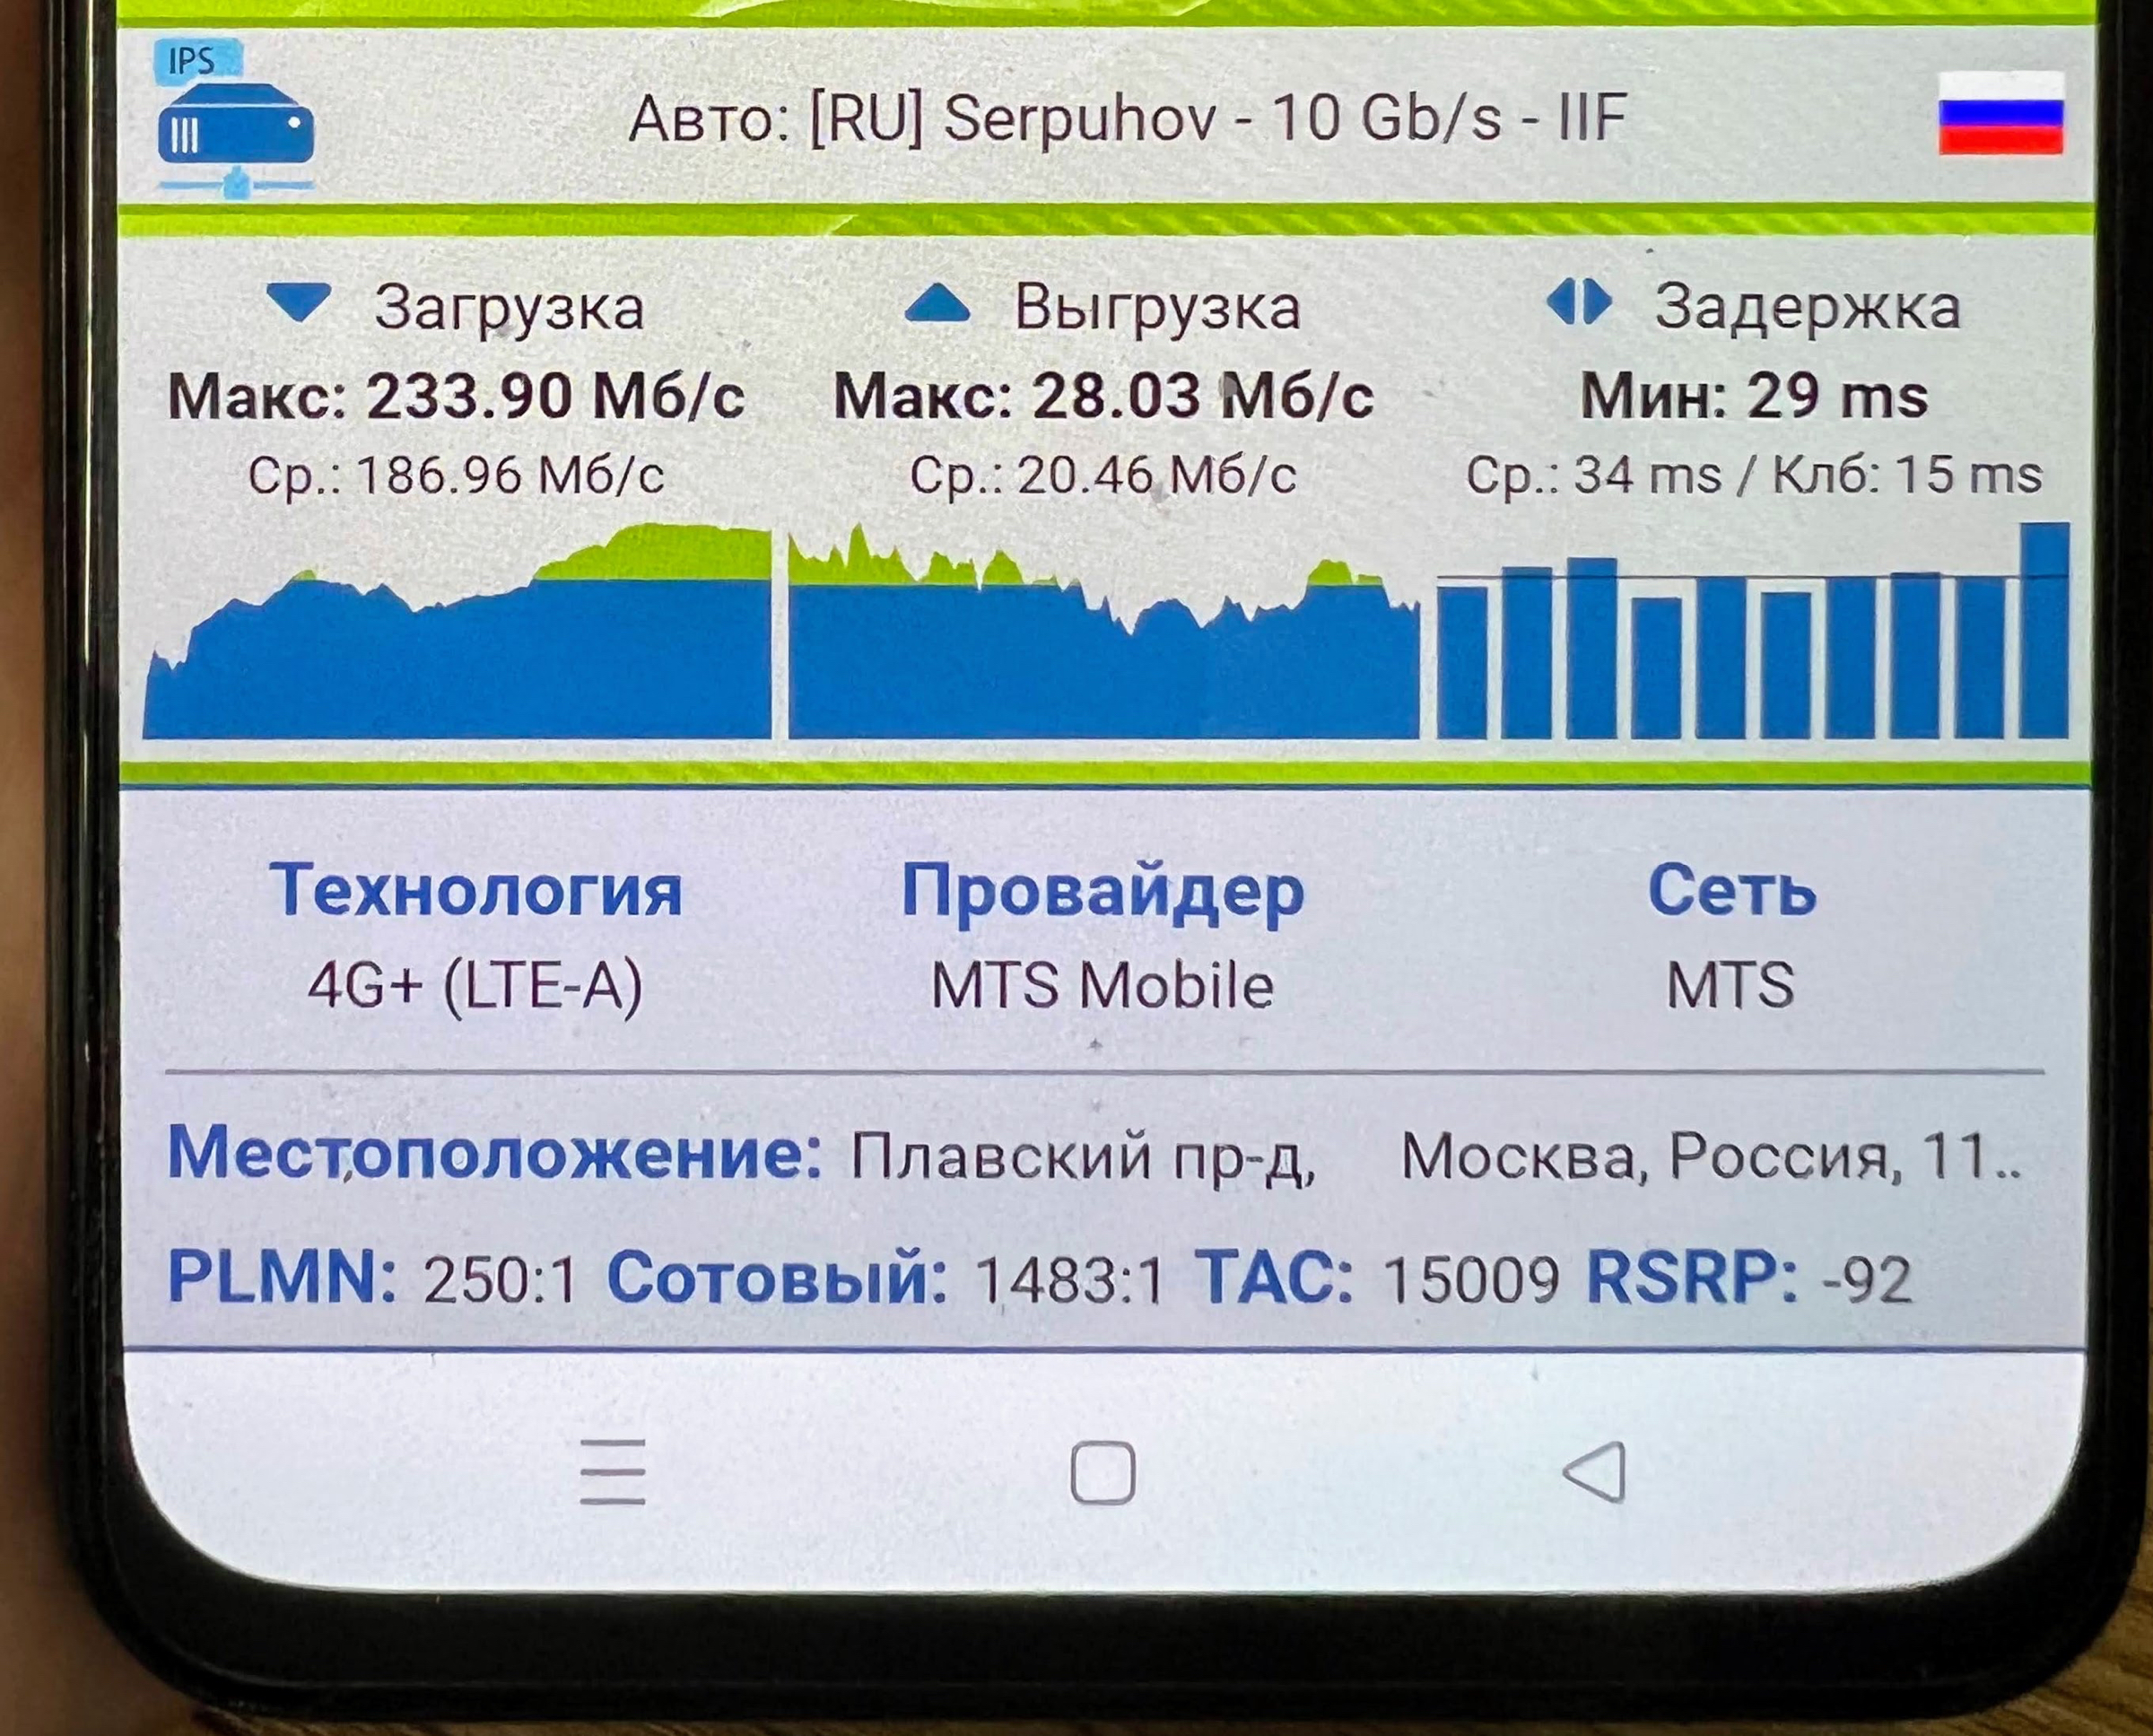 800 мегабит в секунду в московской сети МТС: мифы и реальность